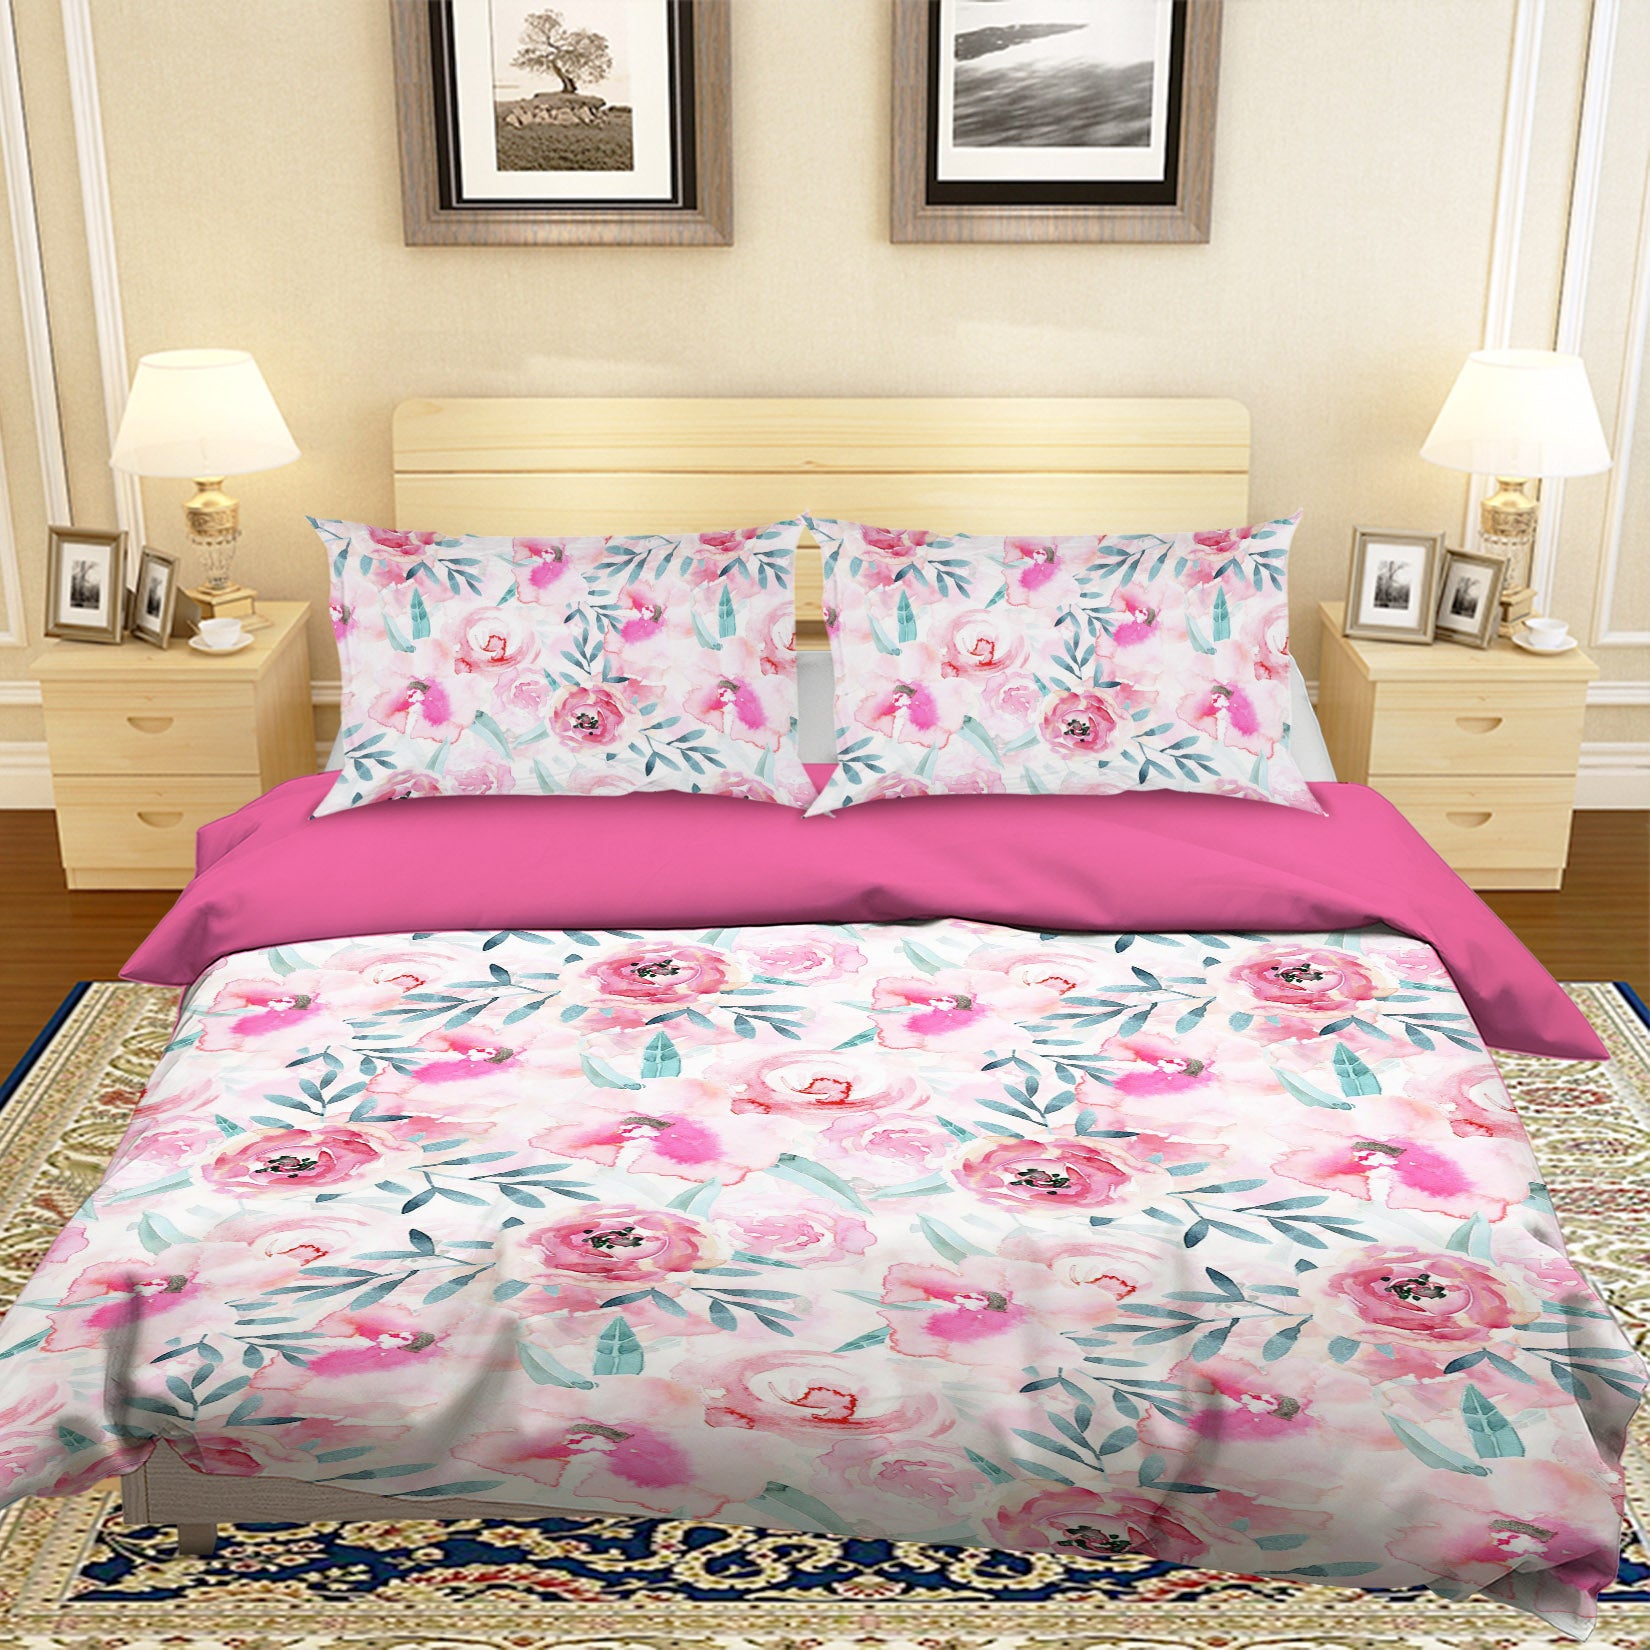 3D Pink Rose 058 Uta Naumann Bedding Bed Pillowcases Quilt